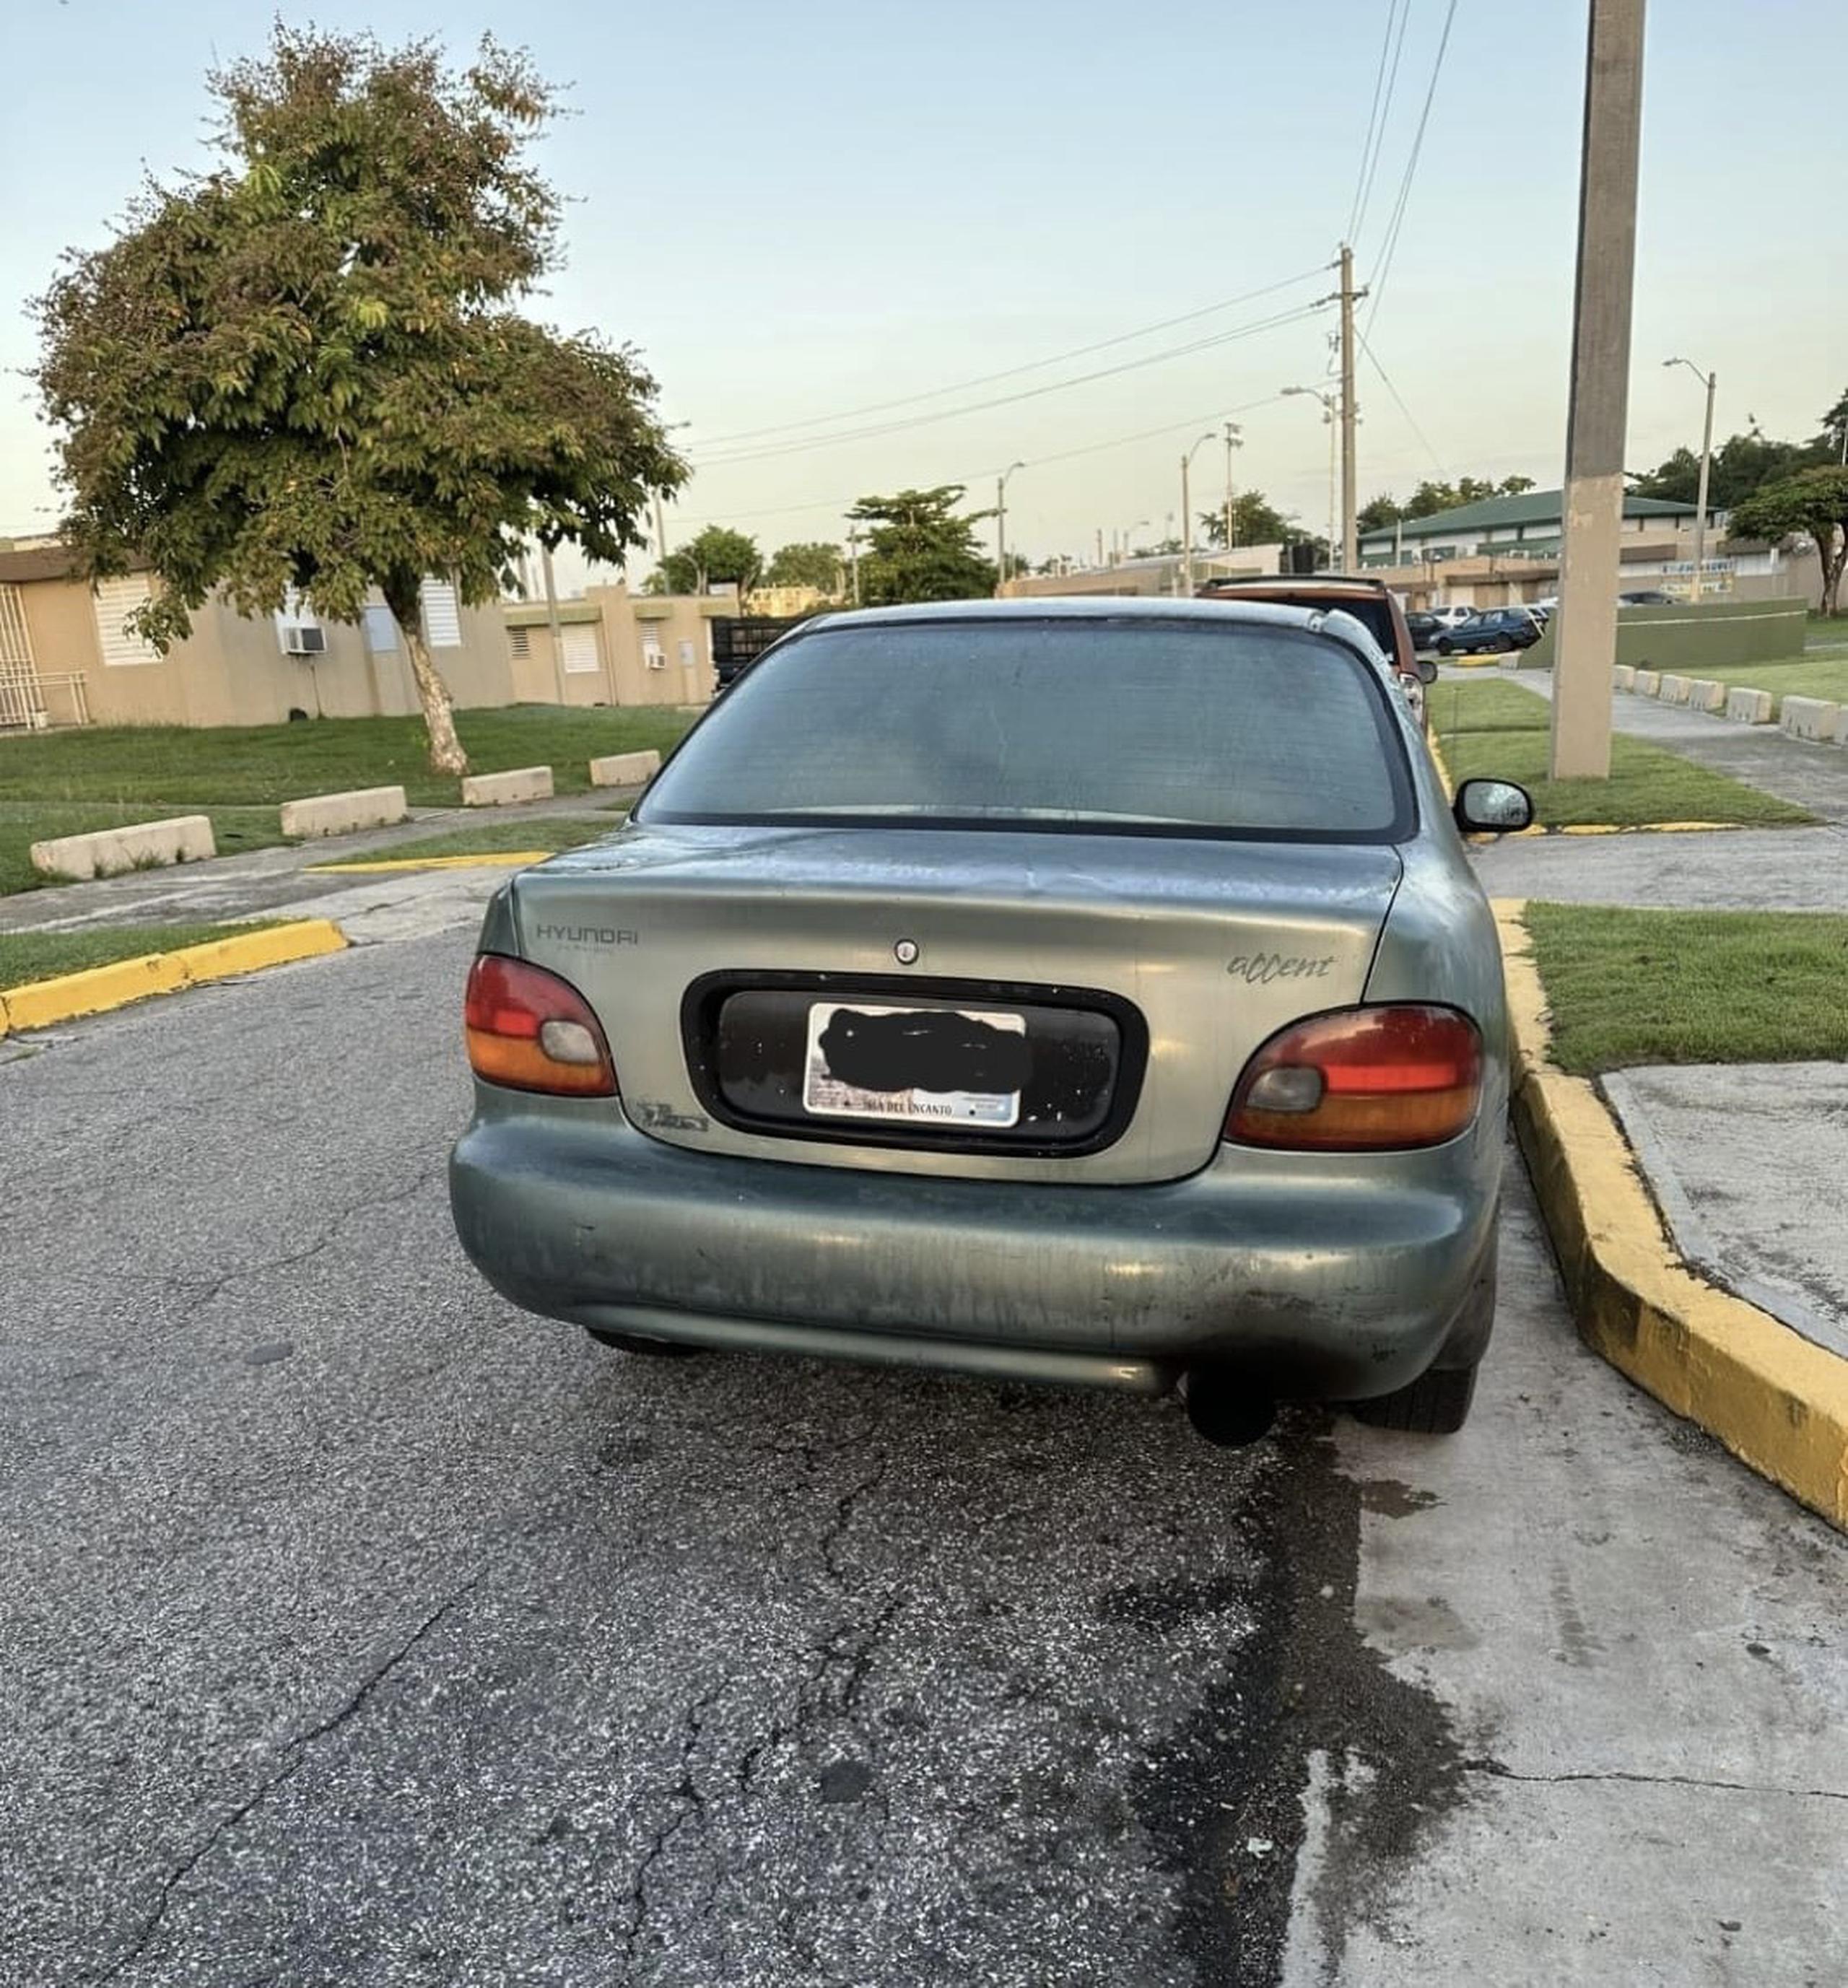 Este es el automóvil ocupado al conductor que se alega atropelló a un peatón en la carretera PR-343, en Hormigueros, y huyó de la escena.